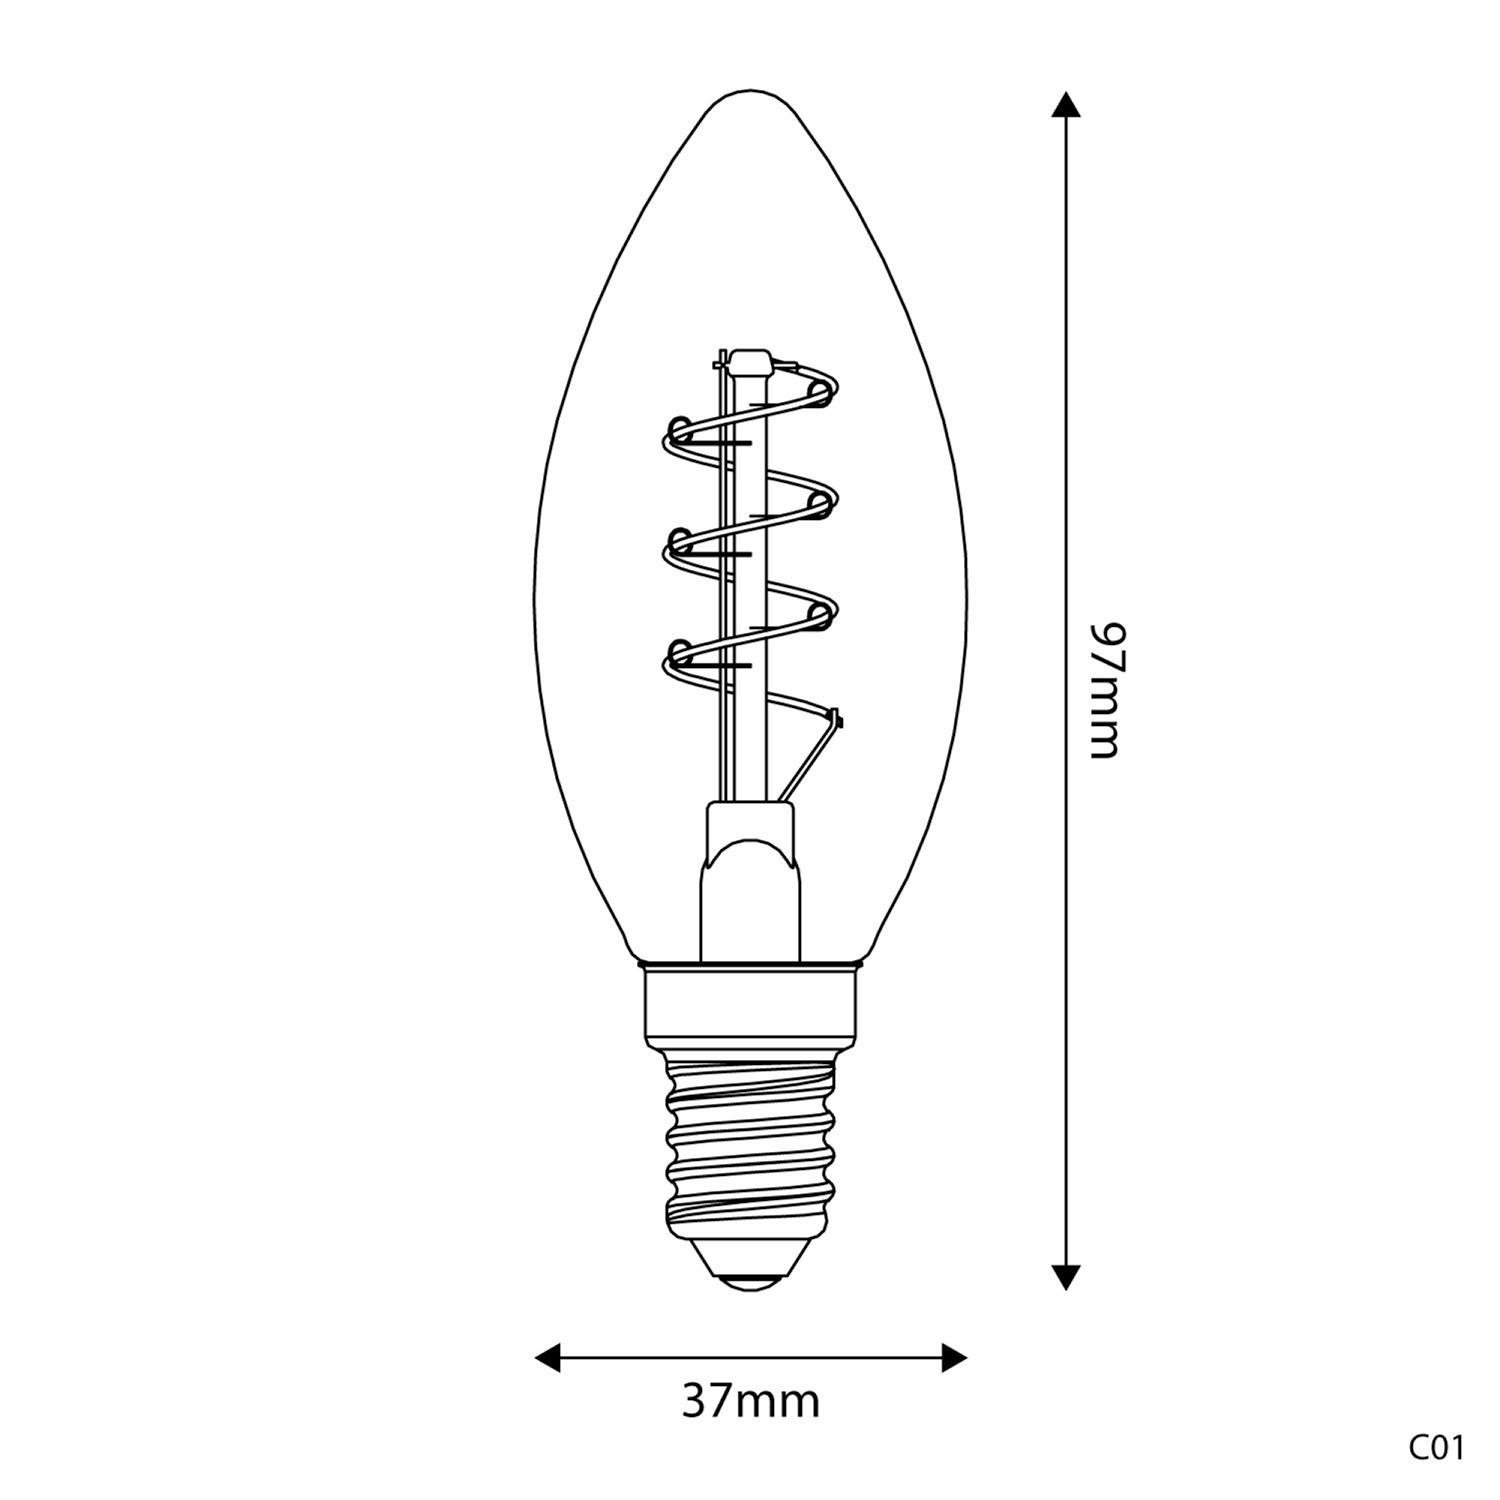 Ampoule Dorée LED Carbon Line avec filament en spirale Candle C35 2,5W 136Lm E14 1800K Dimmable - C01